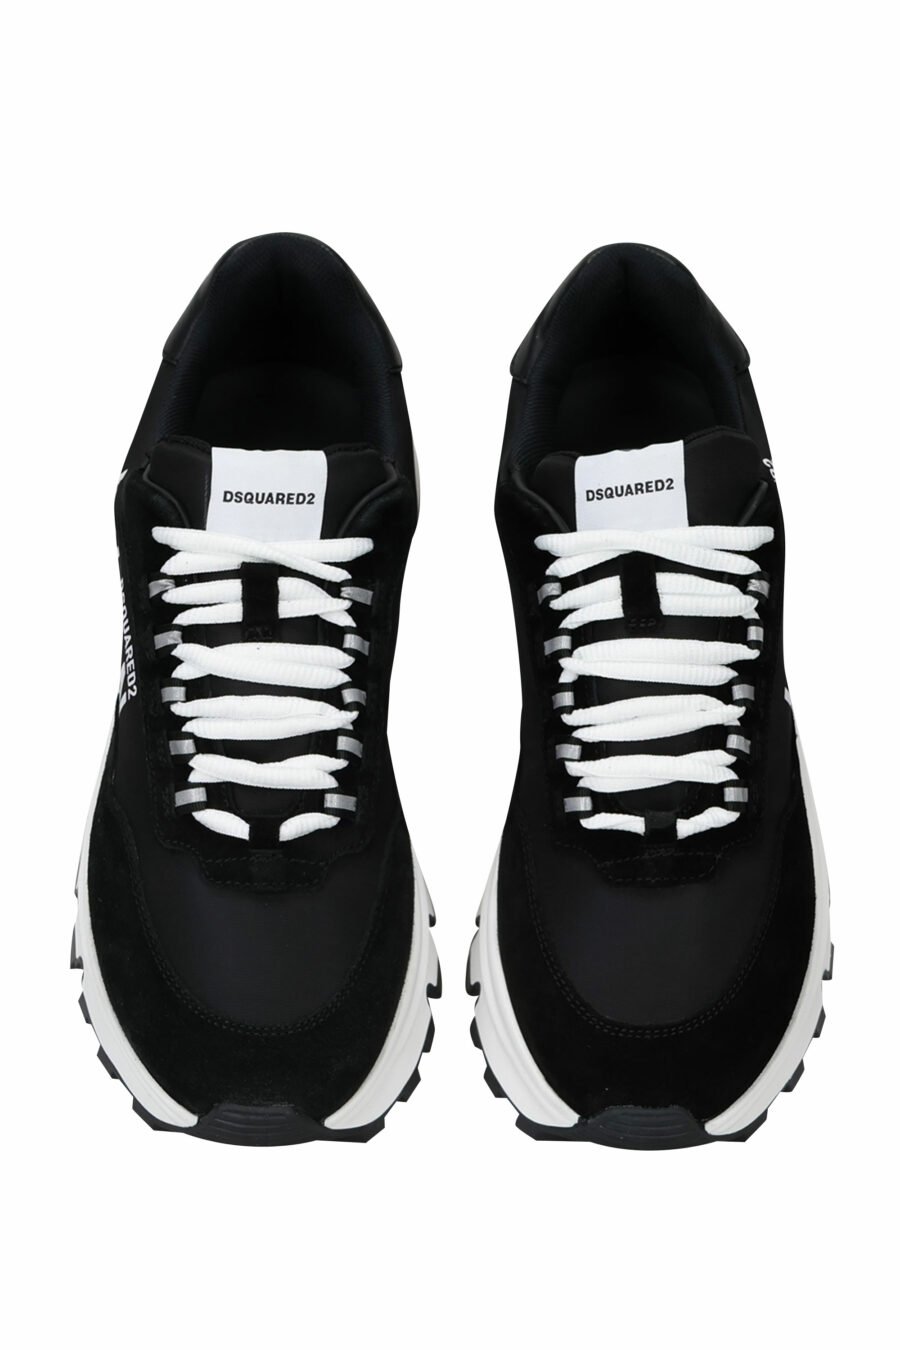 Schwarze Schuhe mit Minilogo "Icon" und weißer Sohle mit Innenschlauch - 8055777249321 6